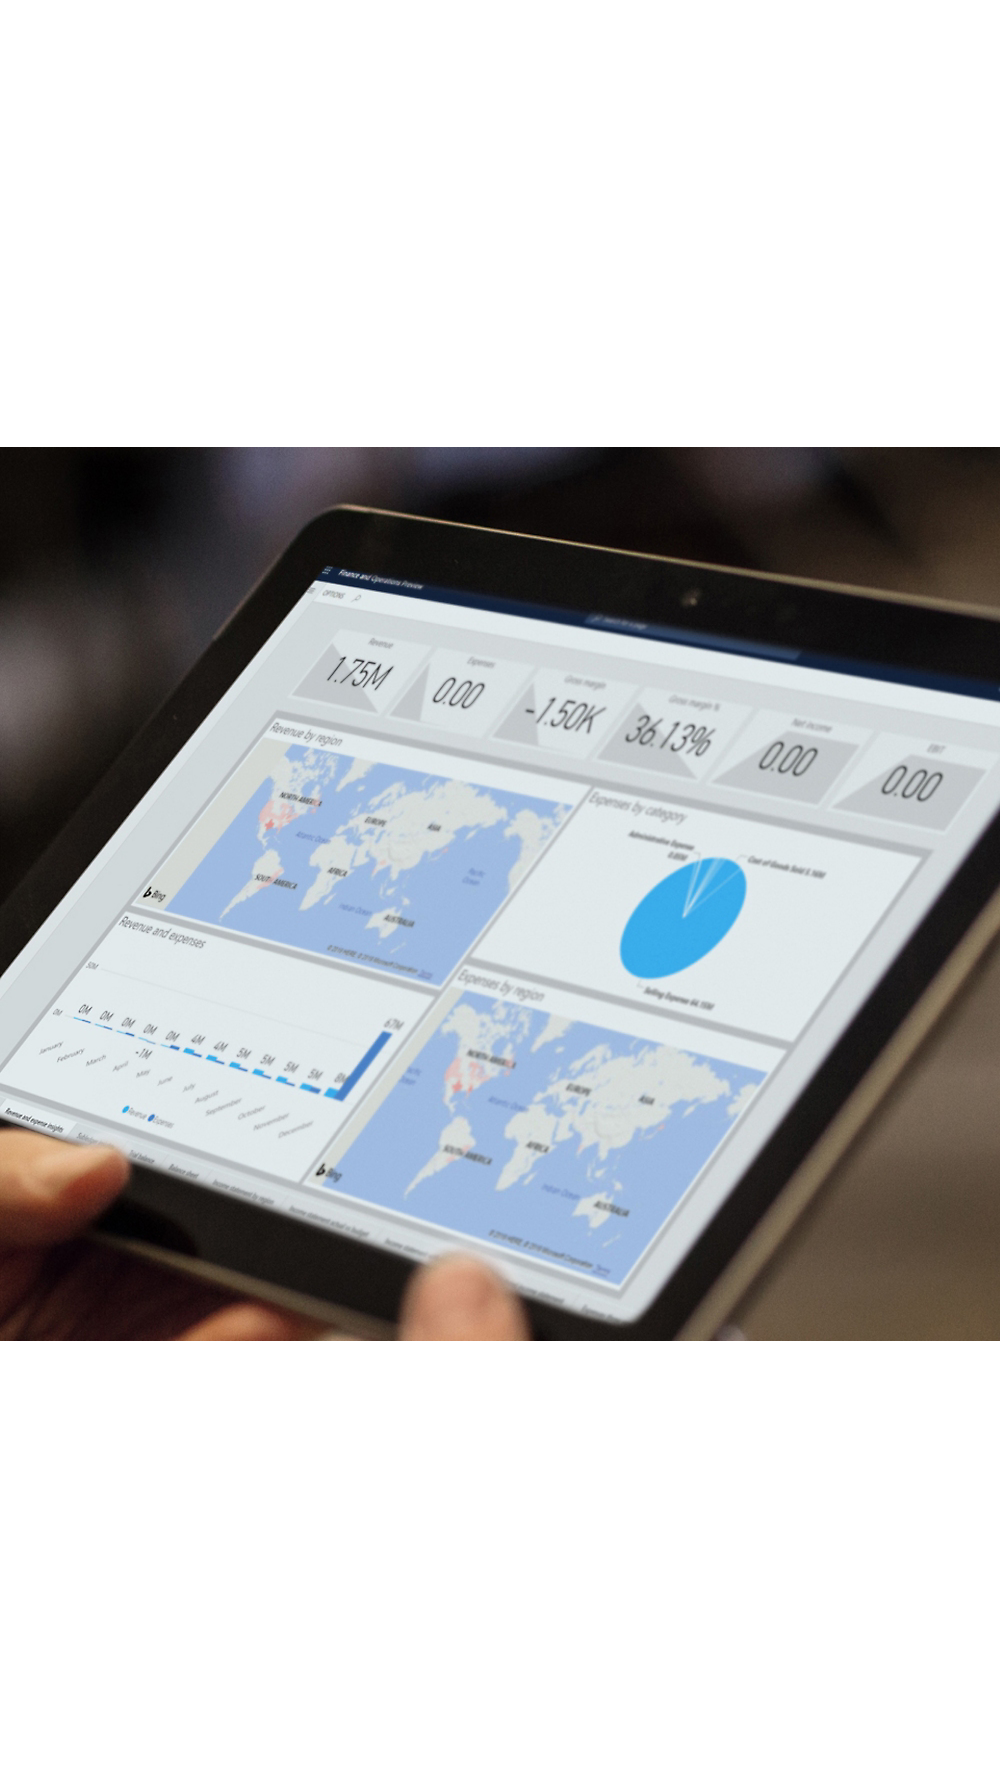 Una persona sosteniendo una tableta que muestra gráficos de análisis, incluidos mapas y gráficos, que reflejan métricas de datos globales.